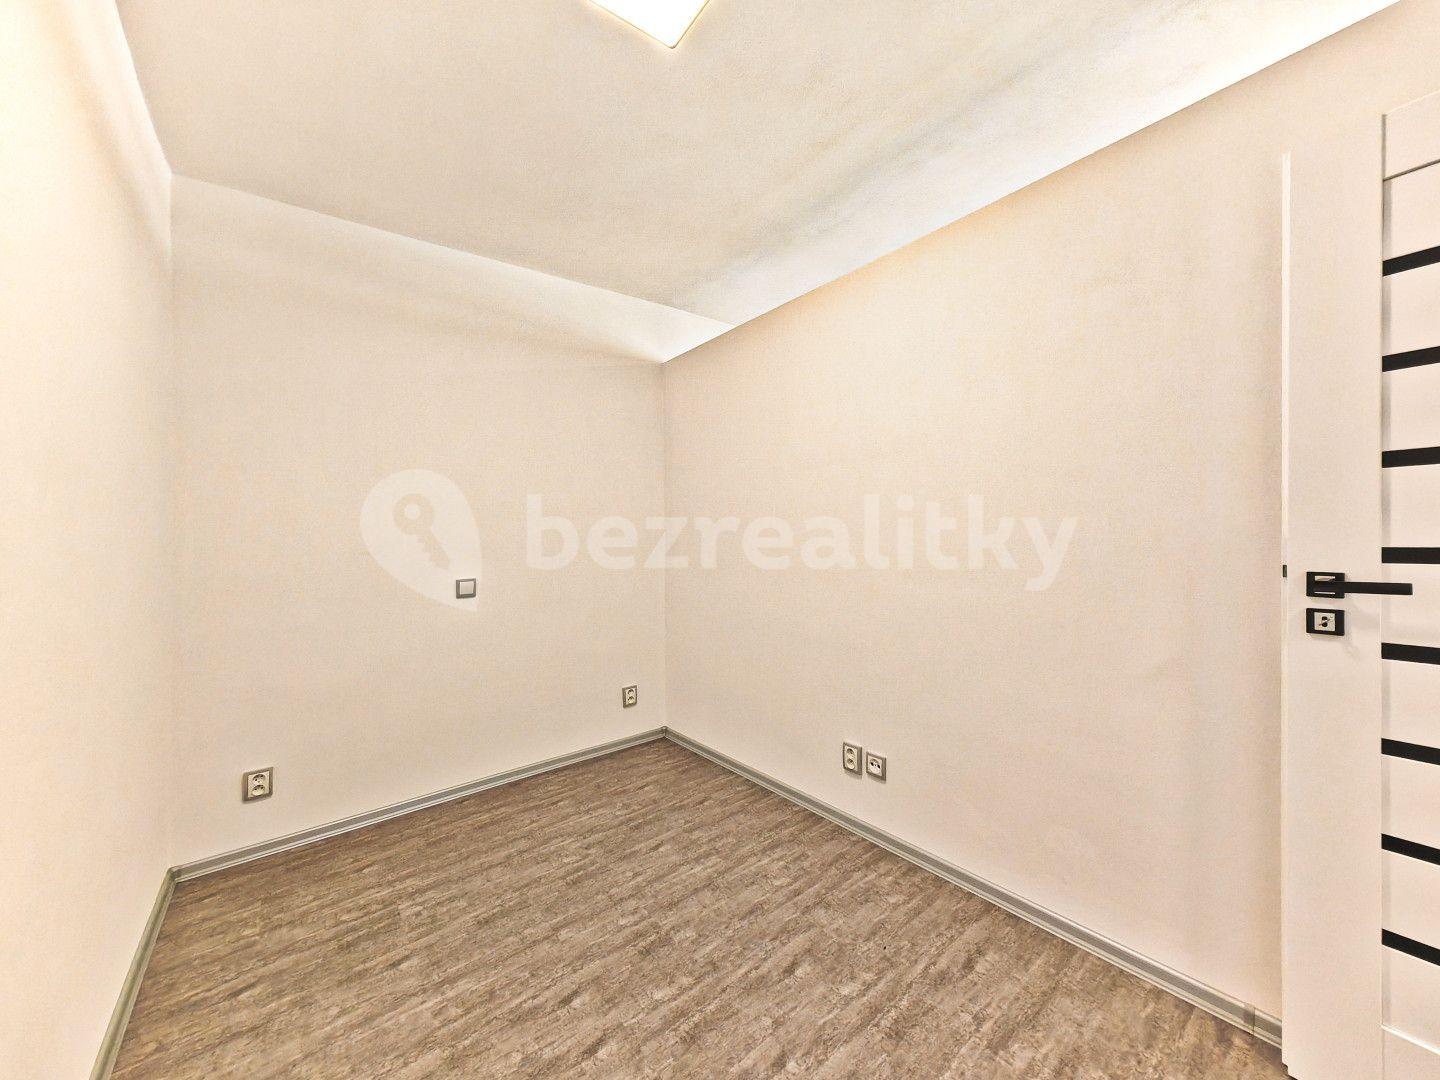 1 bedroom with open-plan kitchen flat for sale, 38 m², Deštné v Orlických horách, Královéhradecký Region